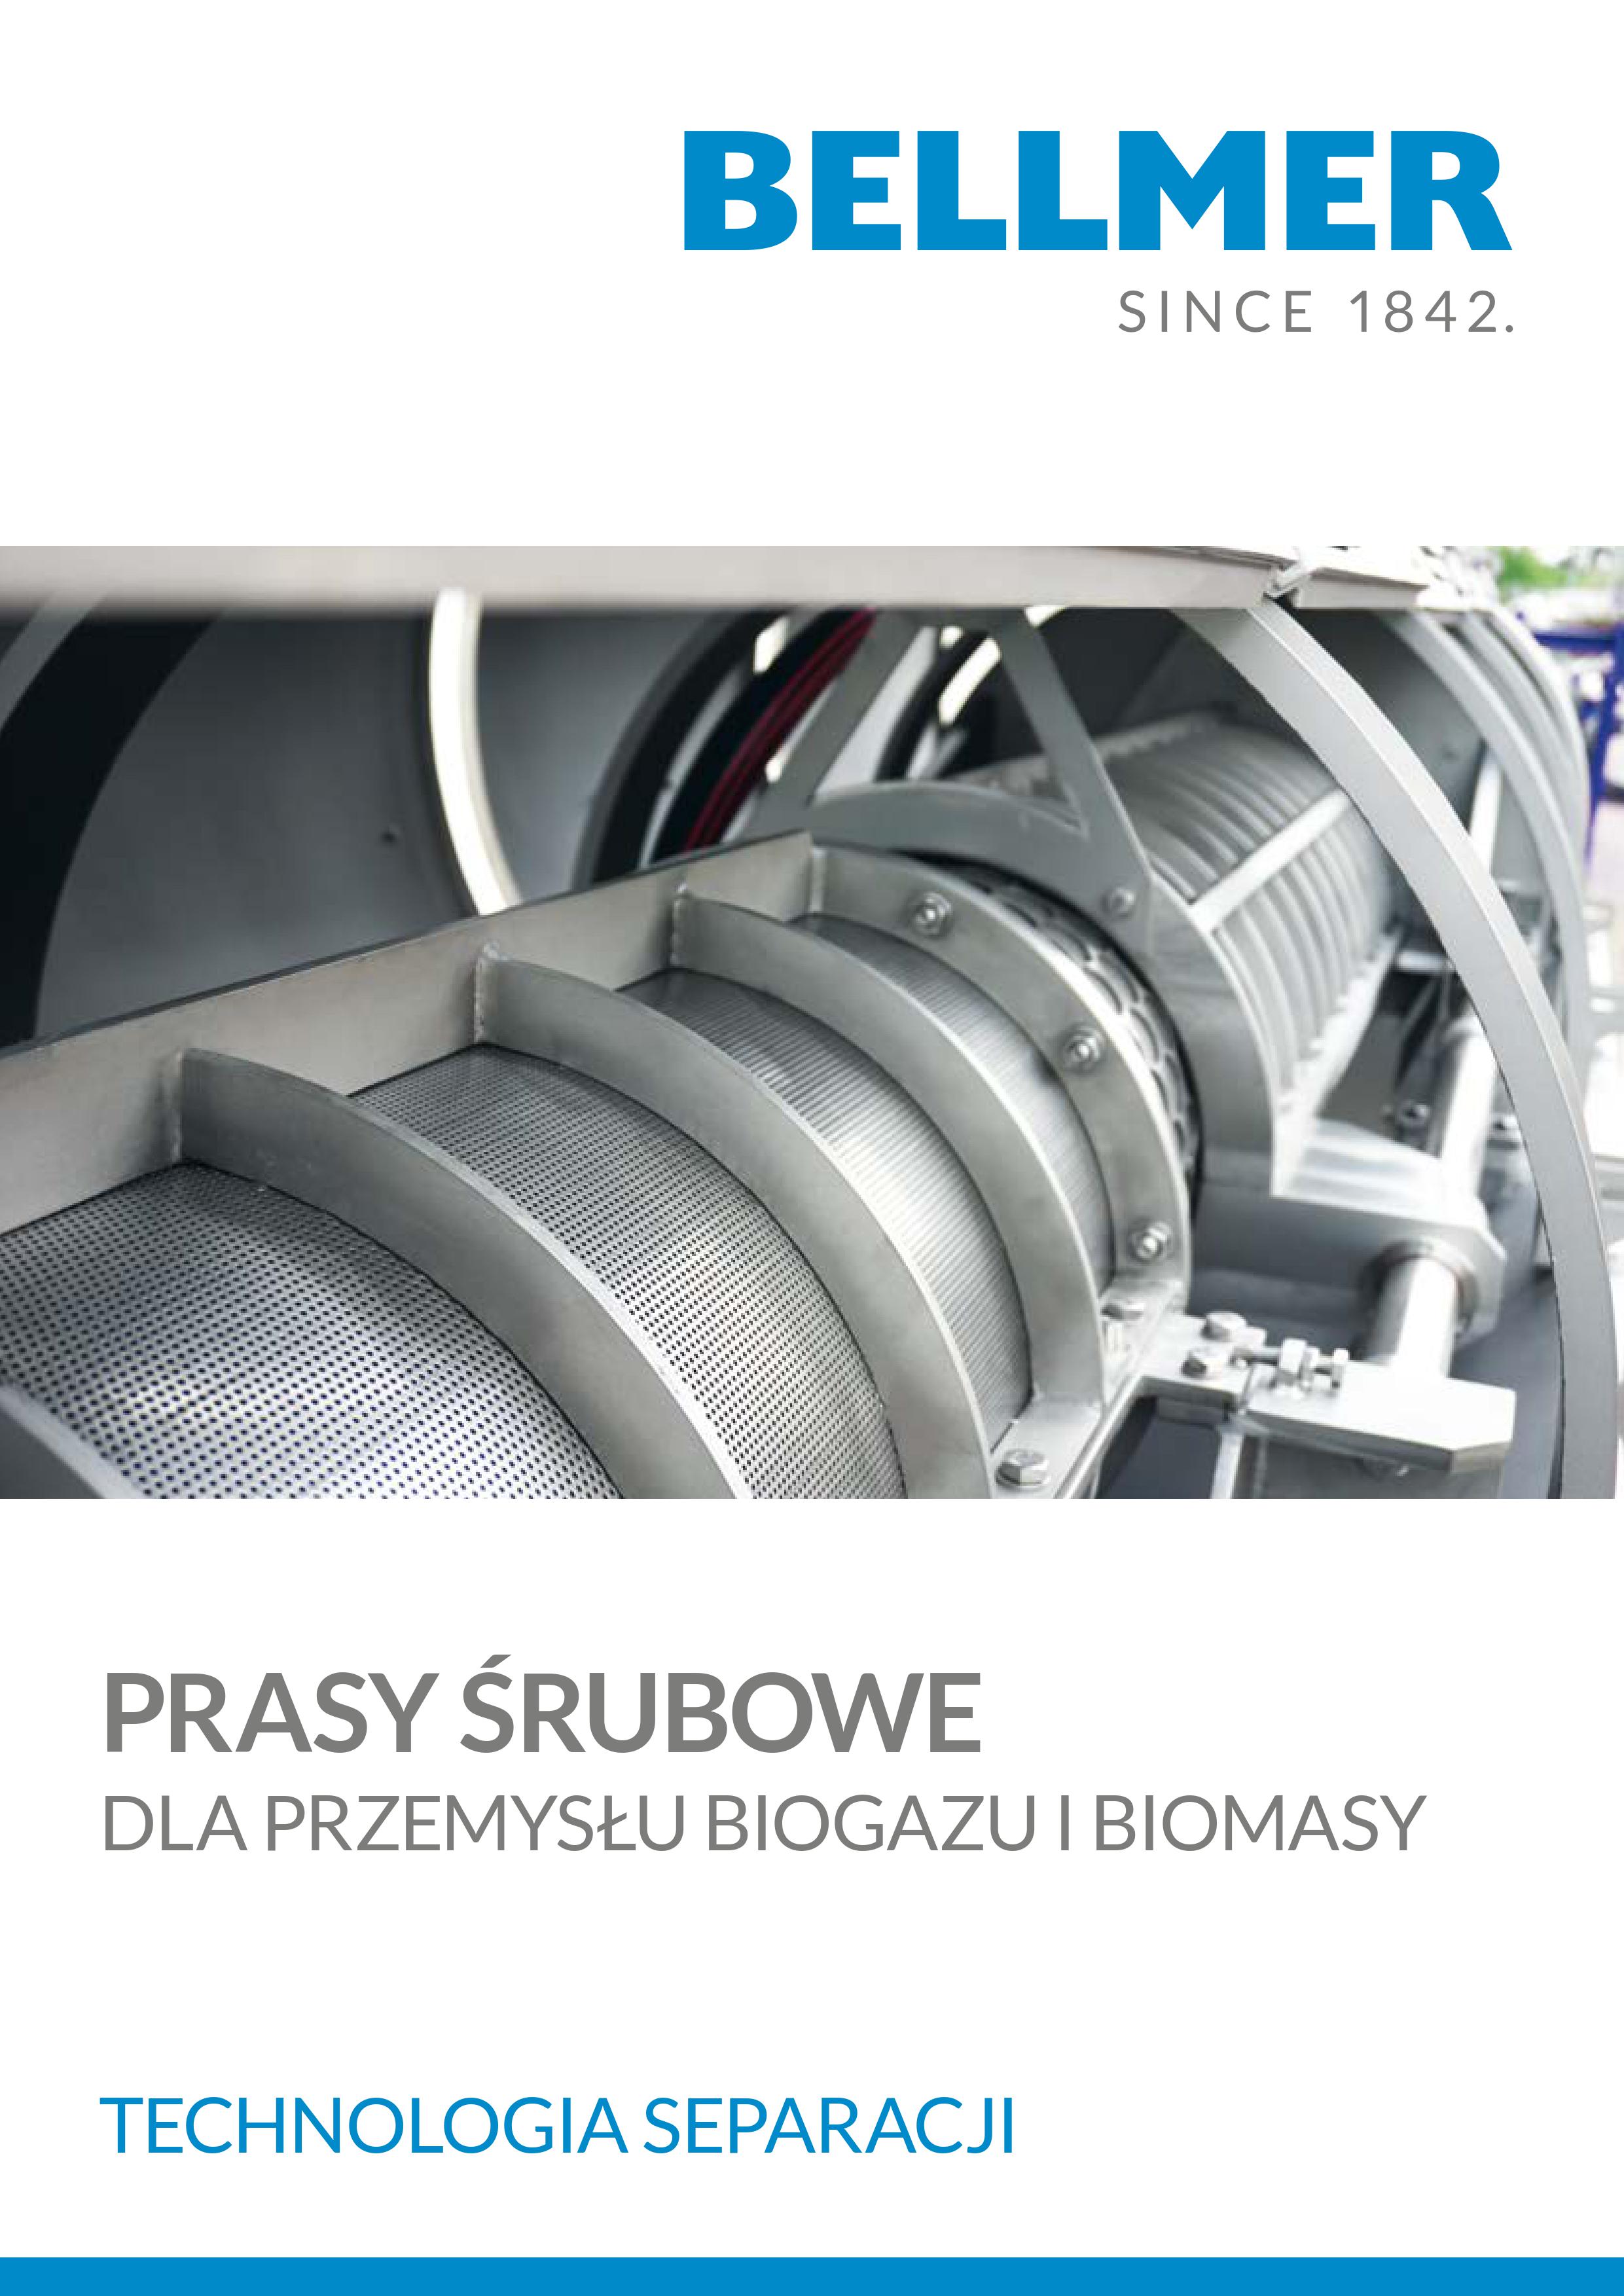 Brochure_BKM_biogas_pl_low